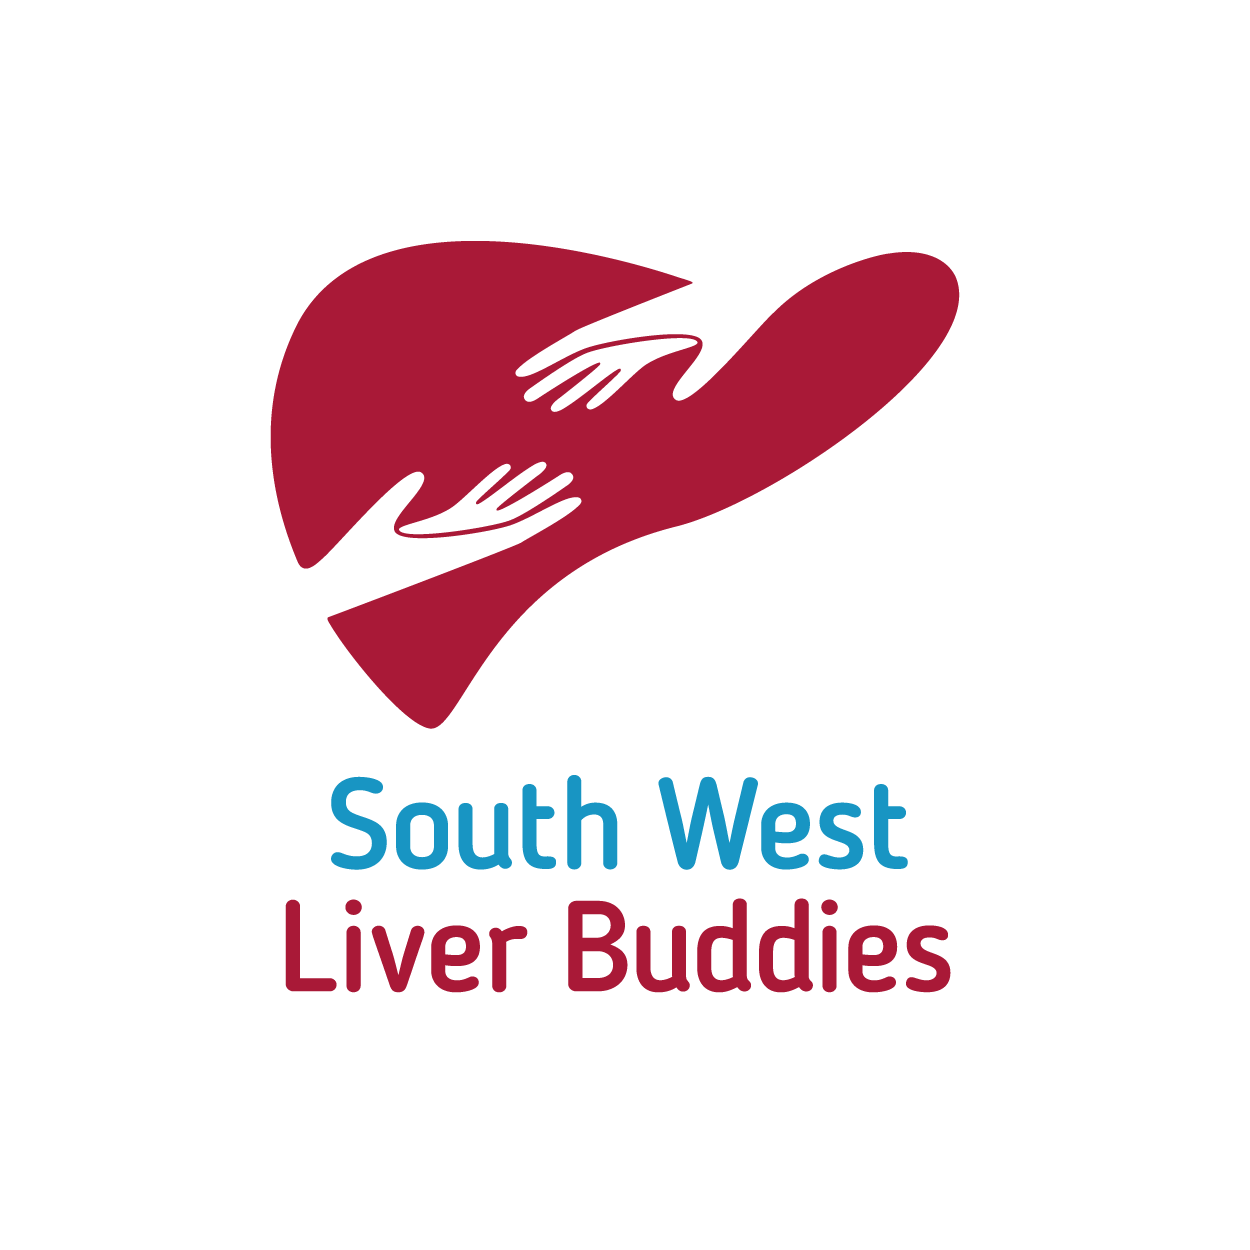 South West Liver Buddies logo